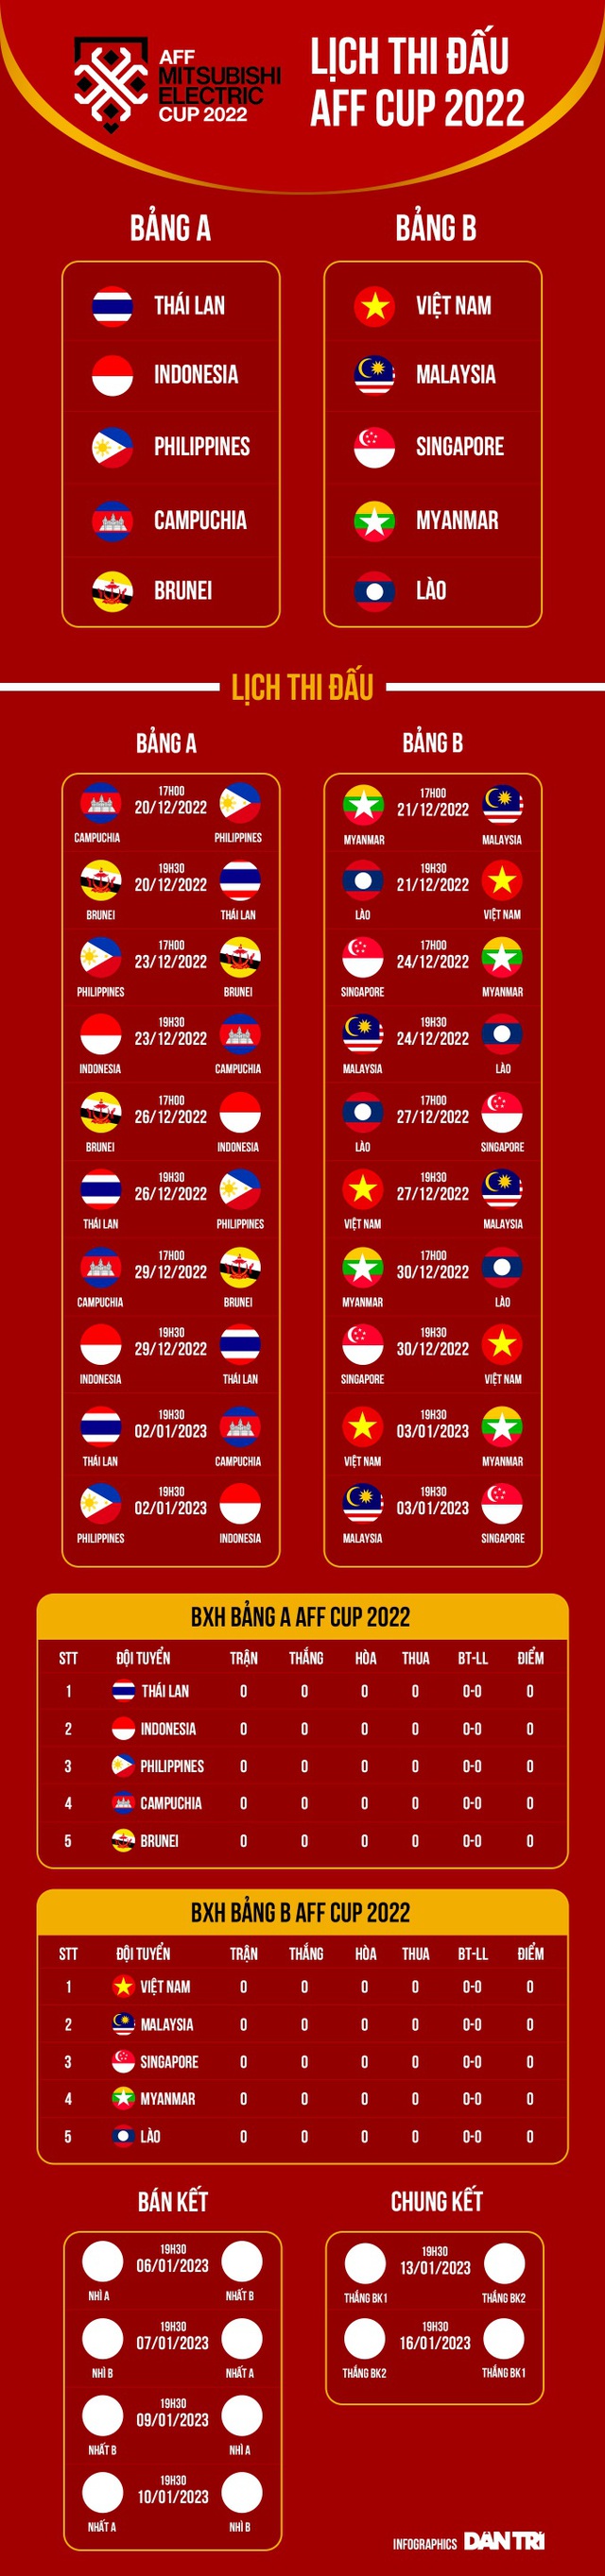 Đội tuyển Việt Nam Lịch thi đấu AFF Cup 2022 - Ảnh 6.